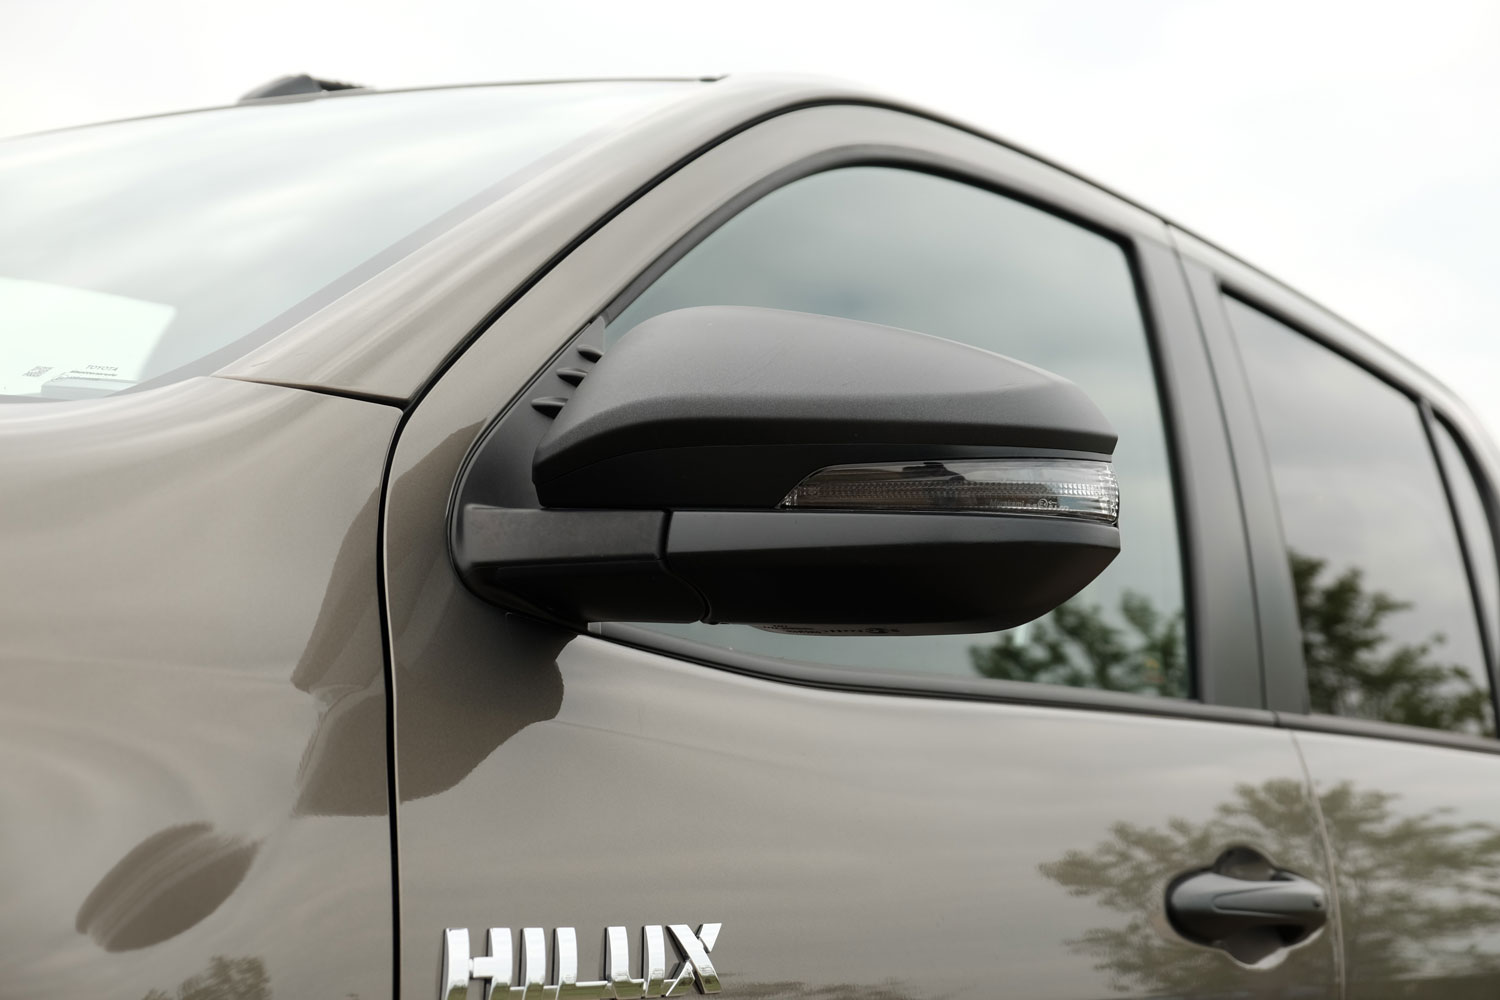 Erősebb, szebb és okosabb lett a világ kedvenc pickupja – Toyota Hilux 2.8 11